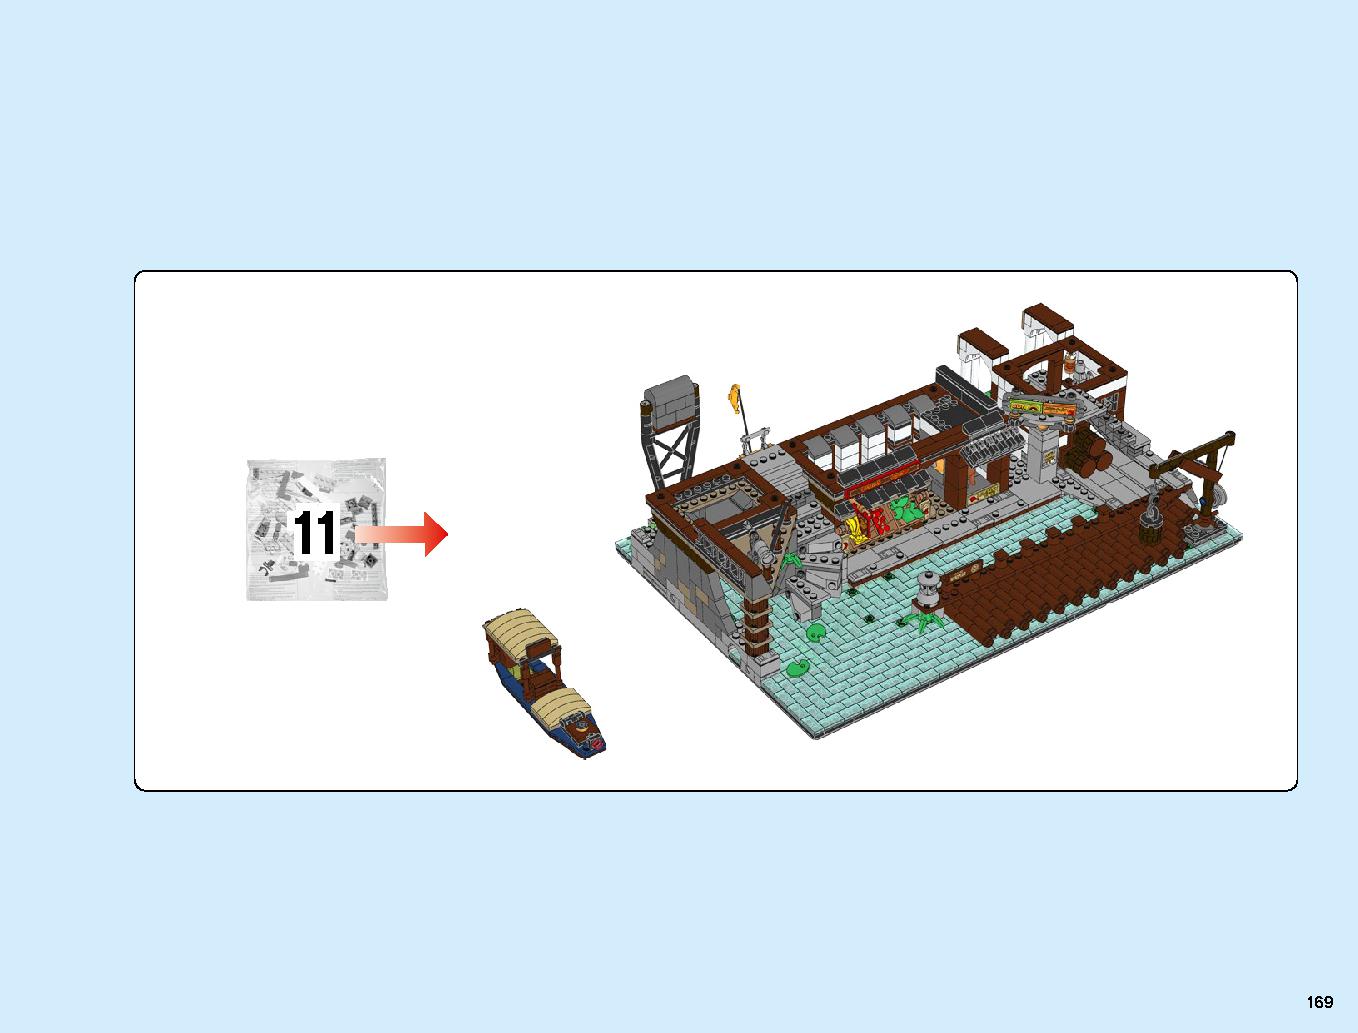 ニンジャゴーシティ・ポートパーク 70657 レゴの商品情報 レゴの説明書・組立方法 169 page